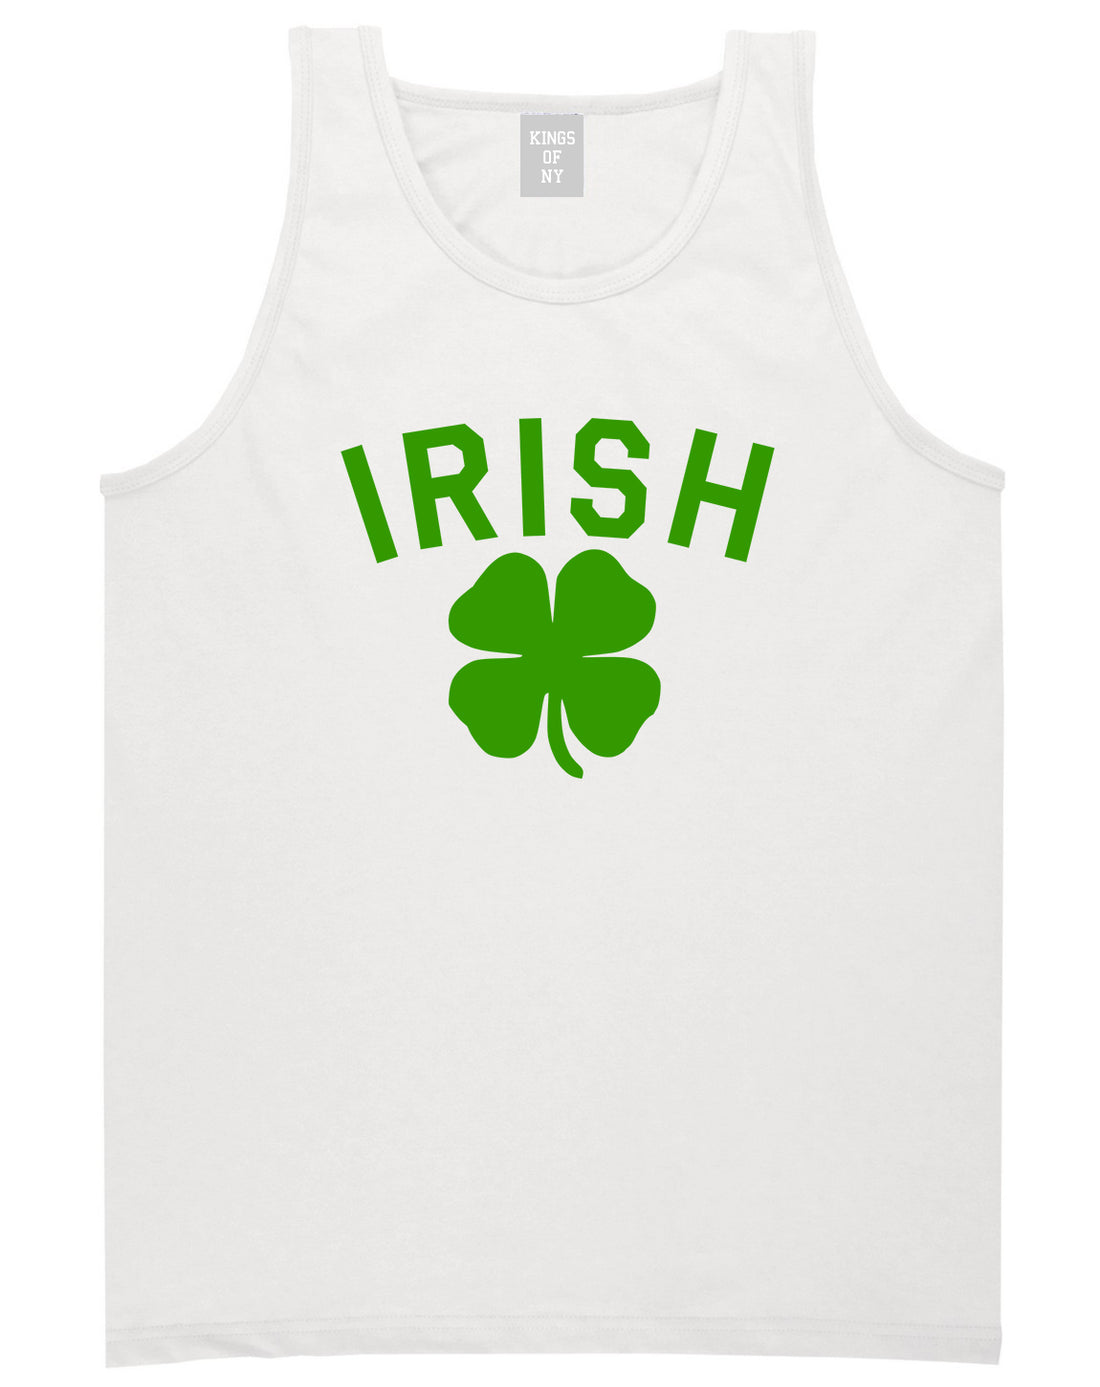 Irish Four Leaf Clover St Patricks Day Mens Tank Top Shirt White